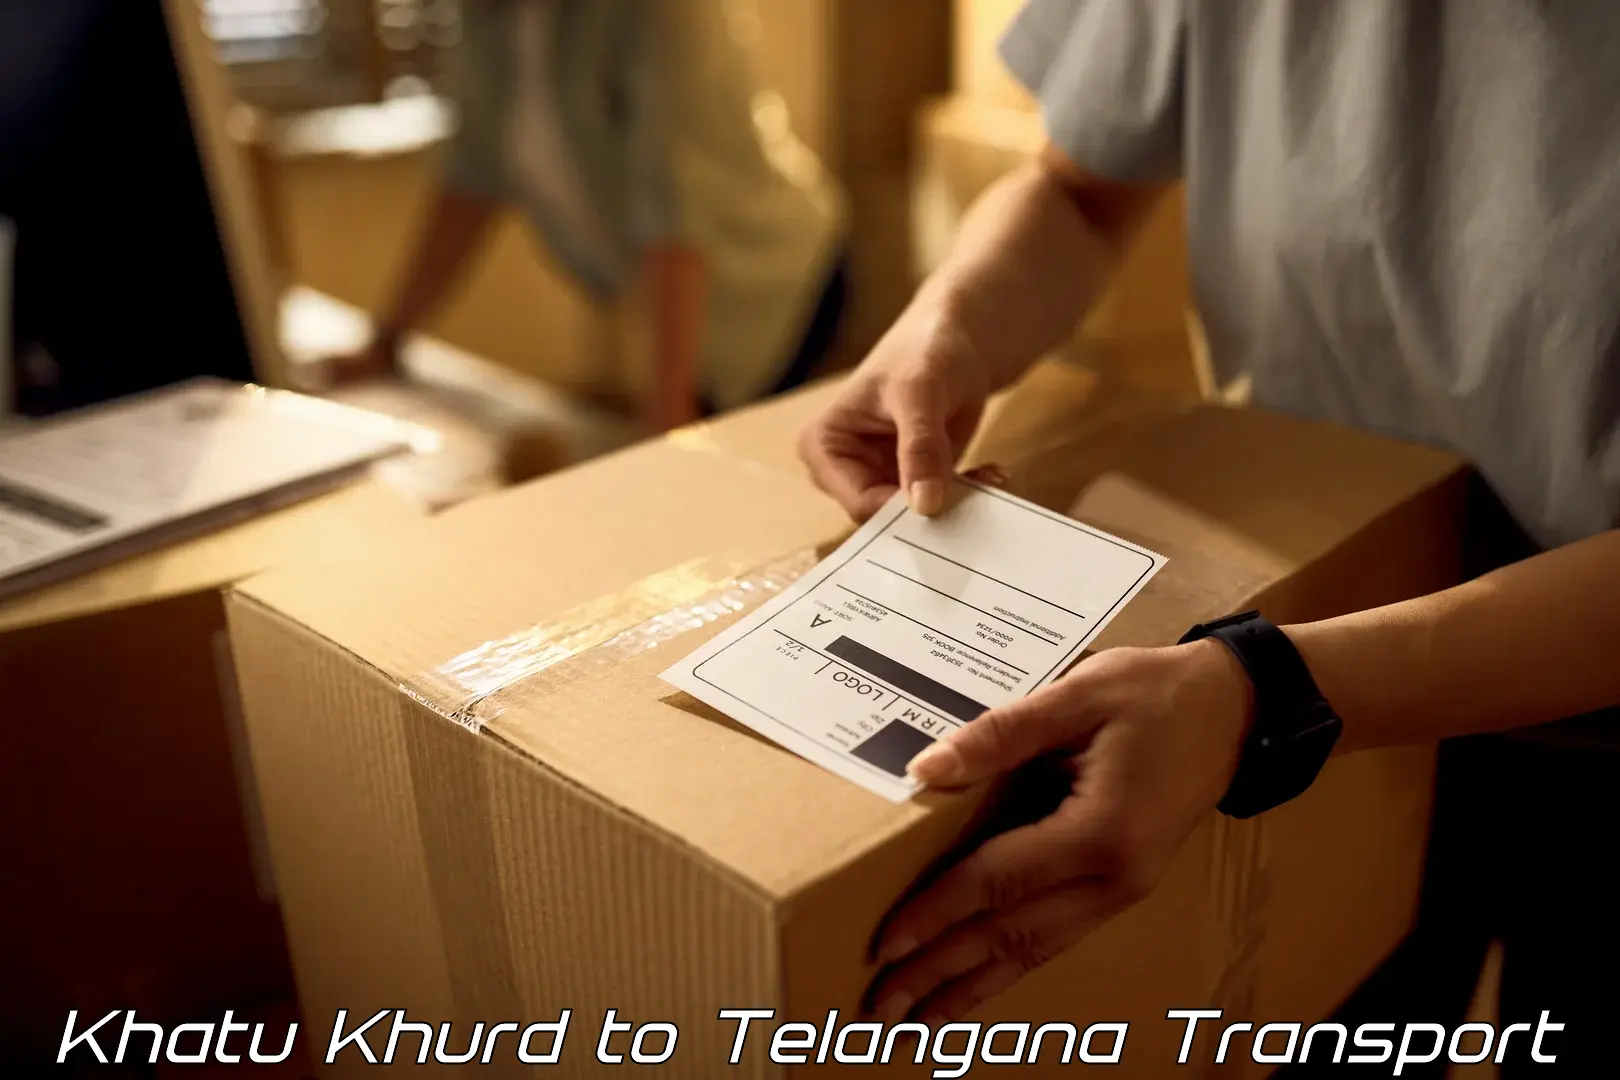 Online transport Khatu Khurd to Secunderabad